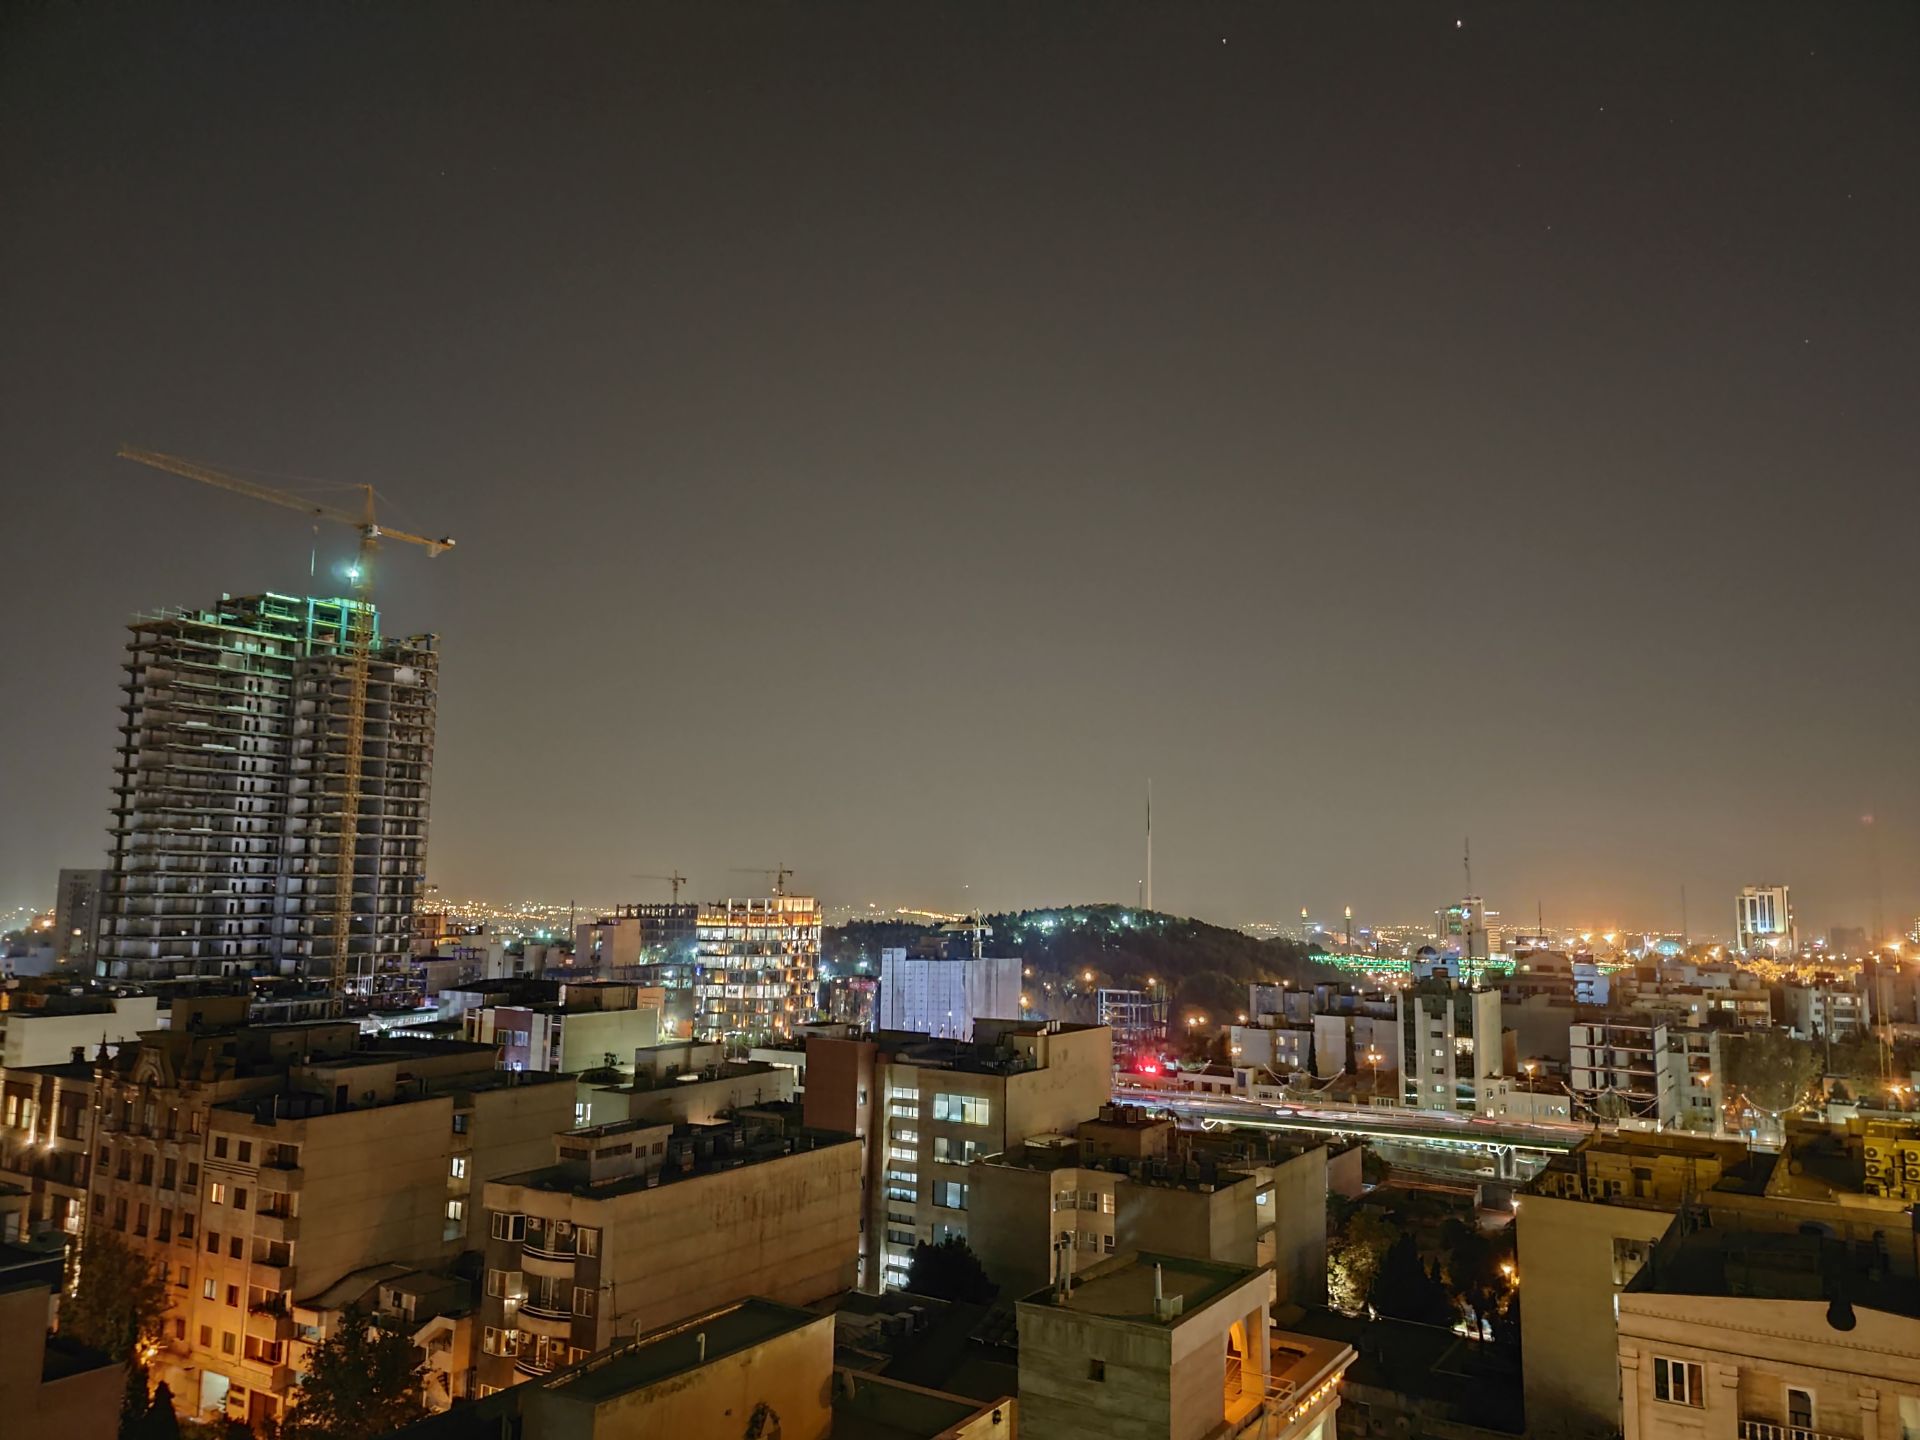 نمونه عکس دوربین اصلی موتورولا اج پلاس در تاریکی - تهران شب هنگام